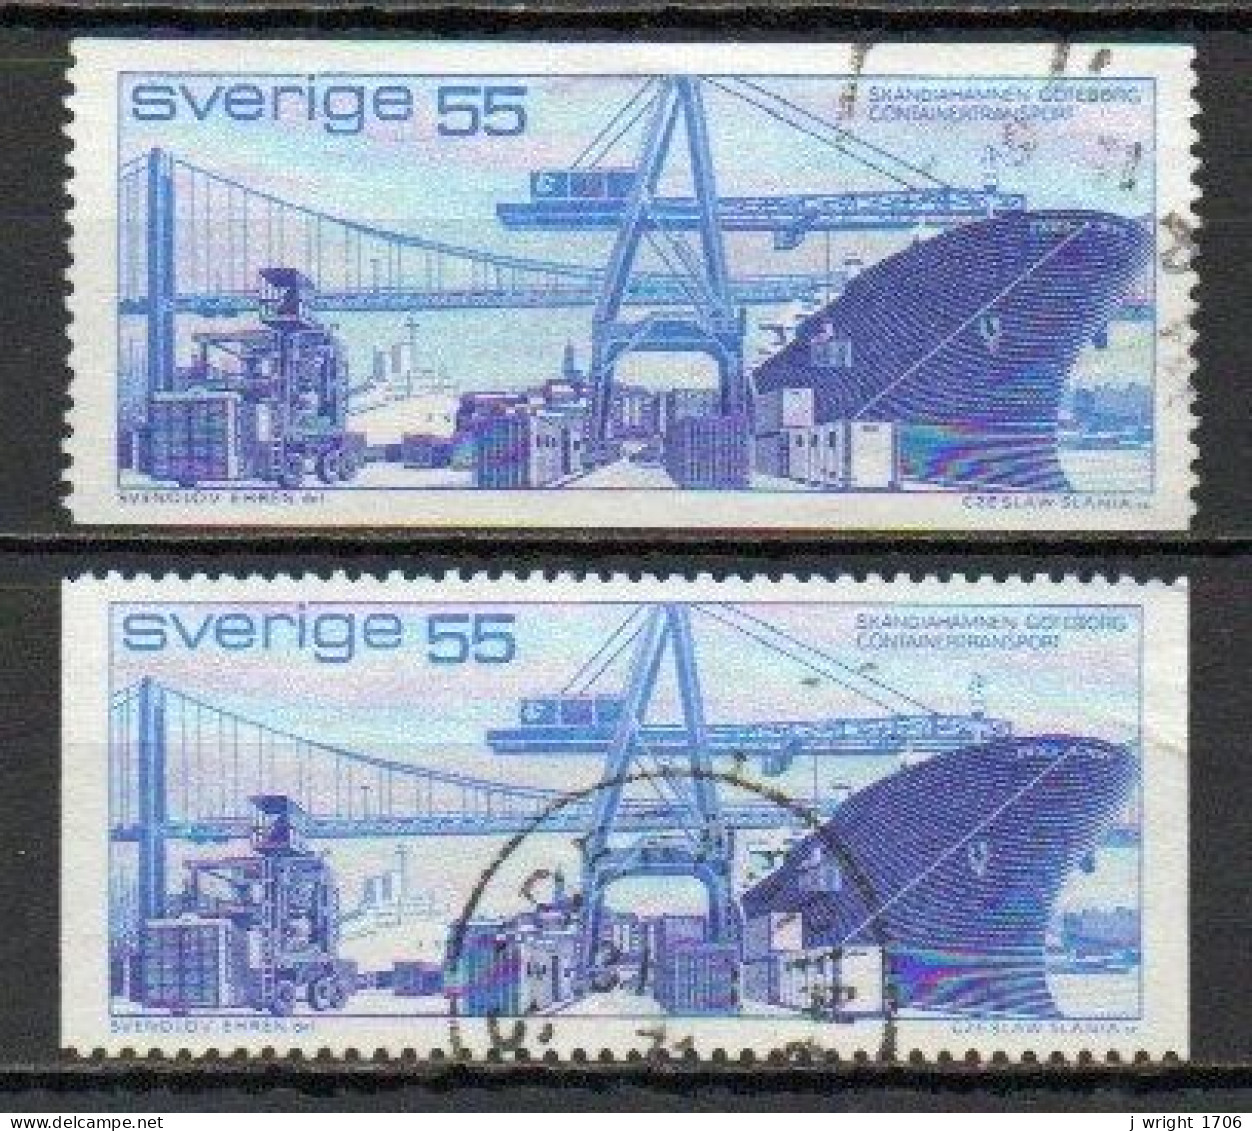 Sweden, 1971, Gothenburg Port, 55ö, USED - Used Stamps